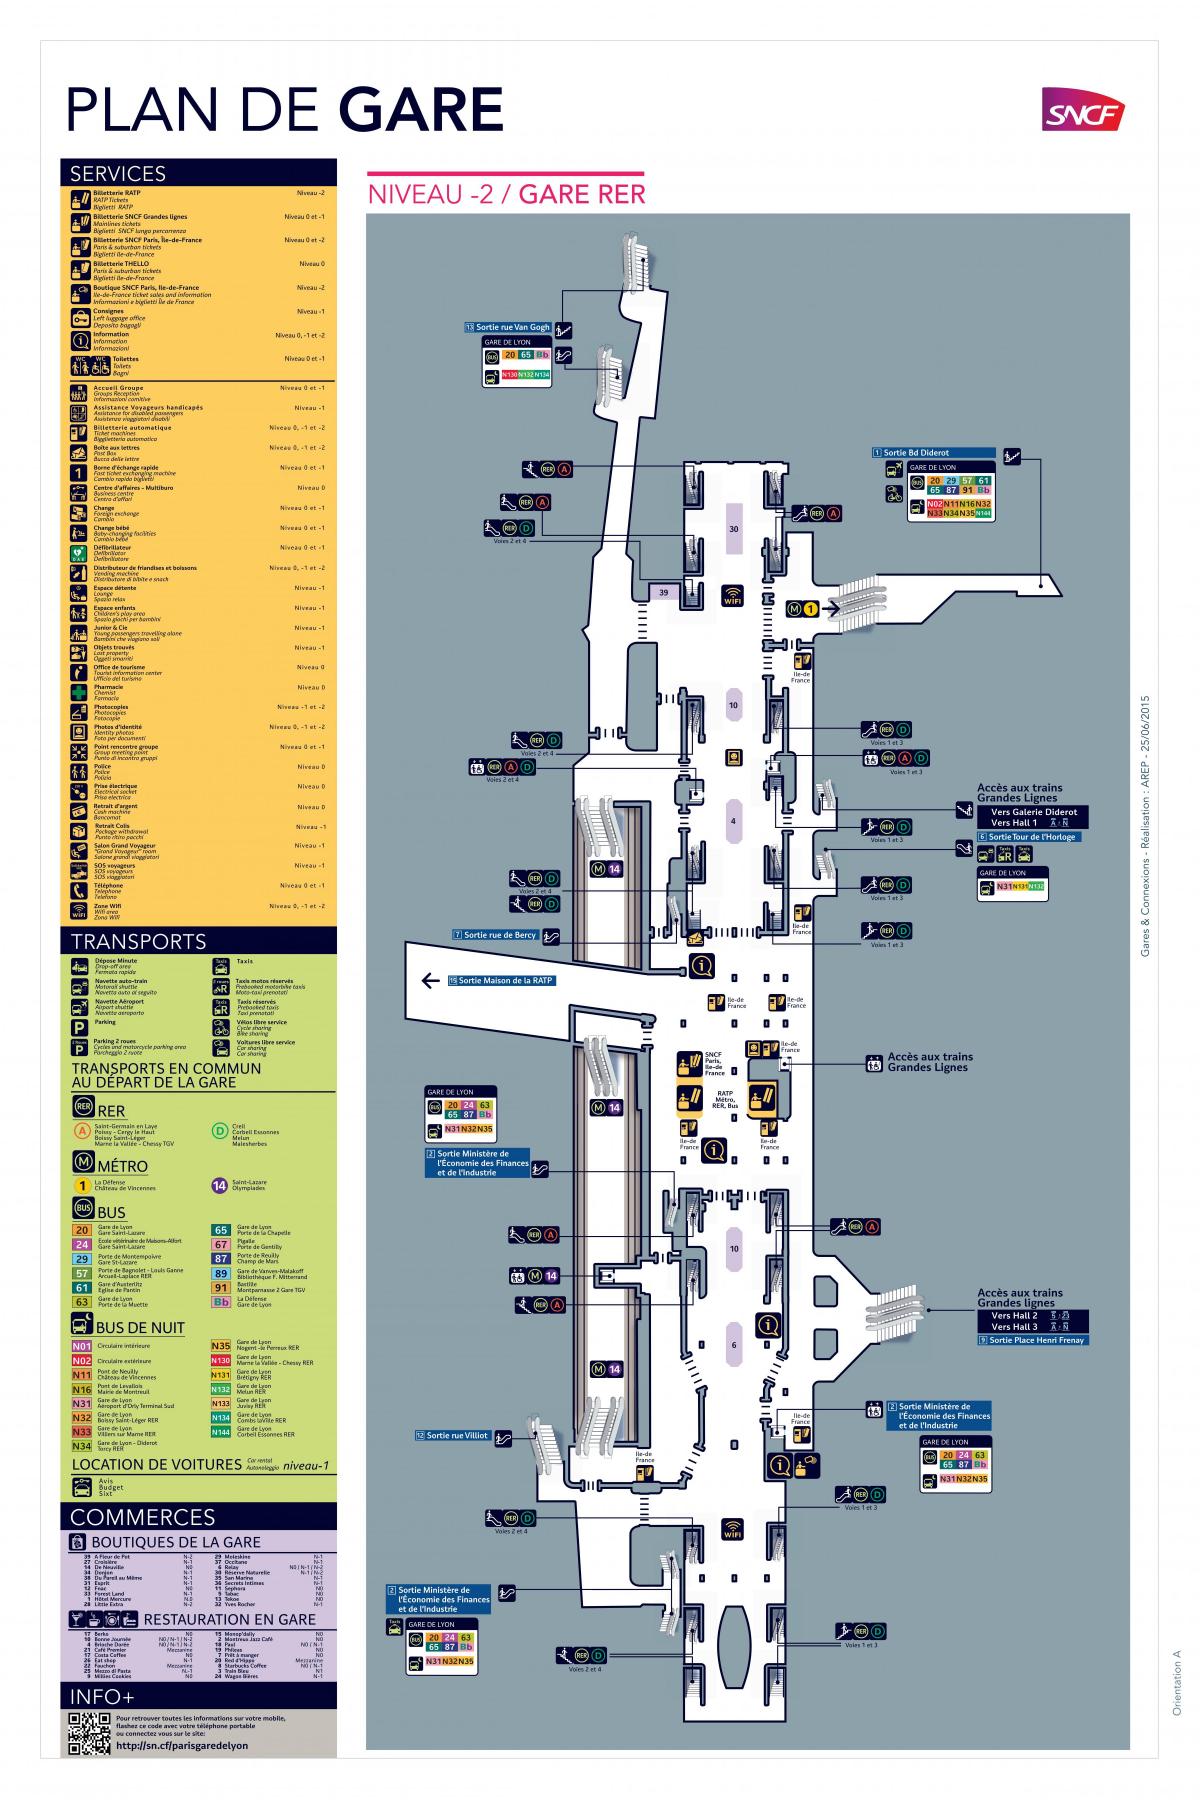 Bản đồ của Paris-Gare de Lyon, PARIS